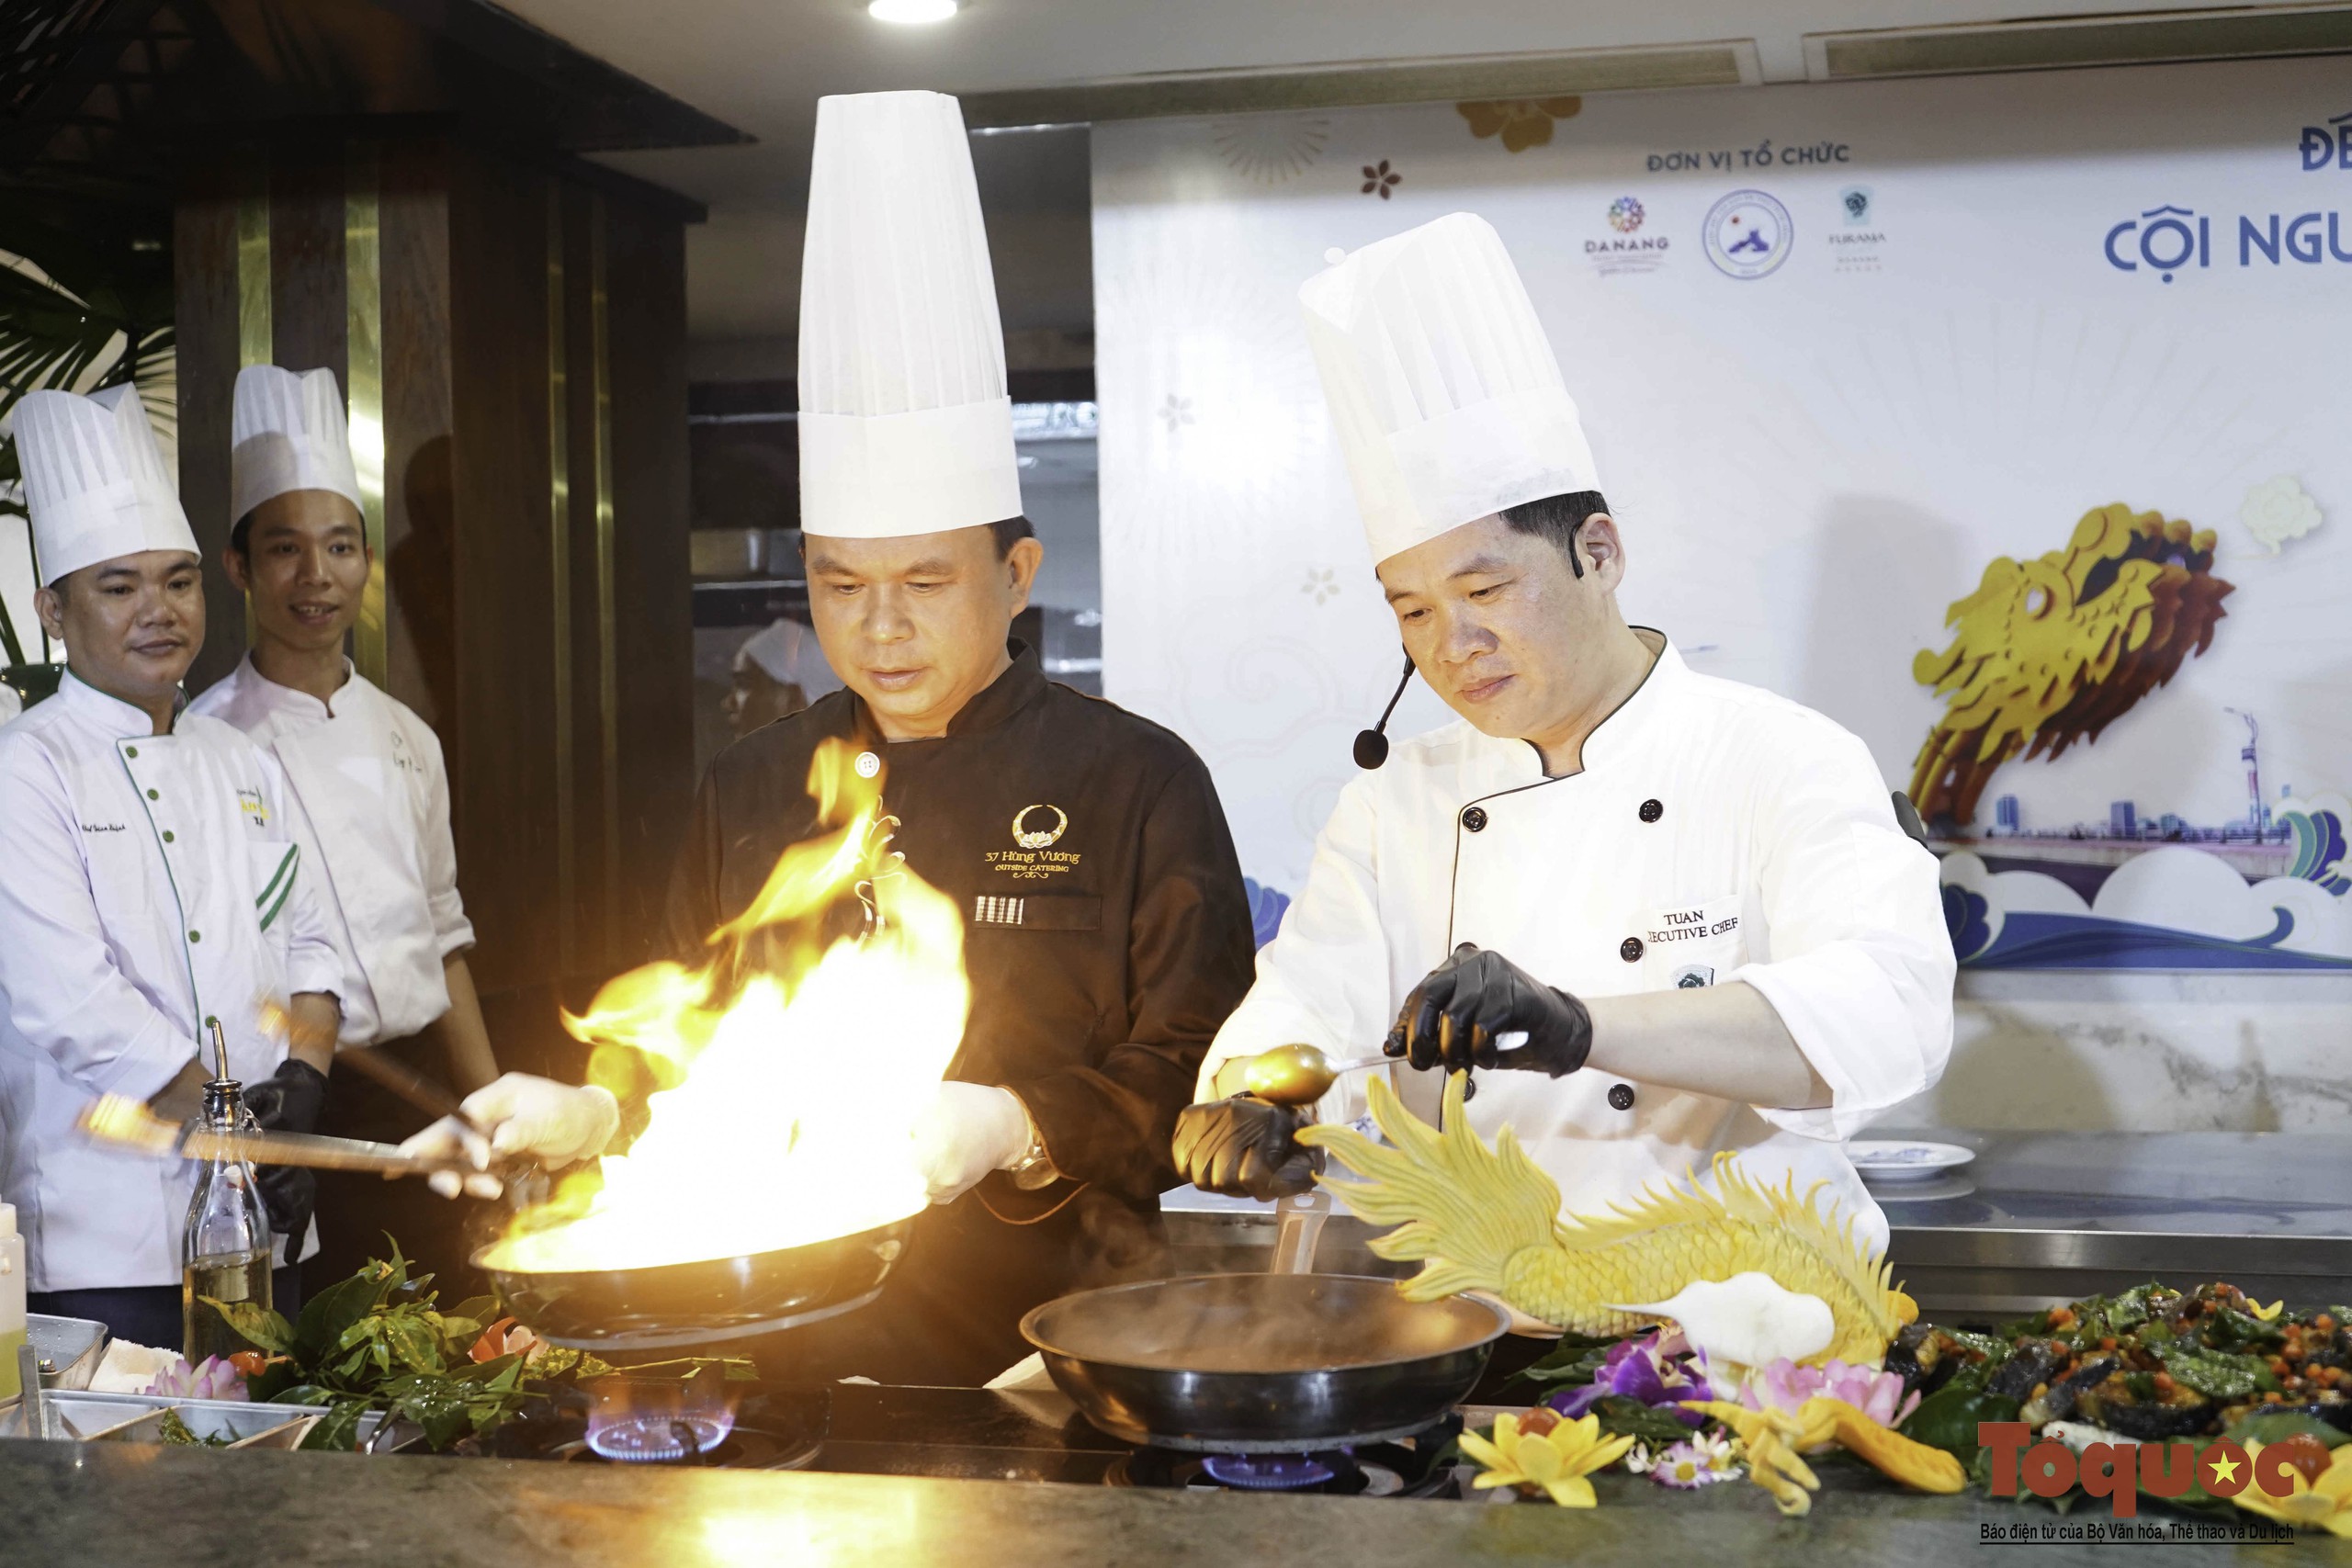 Xem các nghệ nhân ẩm thực hàng đầu Việt Nam quảng diễn những tinh hoa món ngon 3 miền - Ảnh 10.